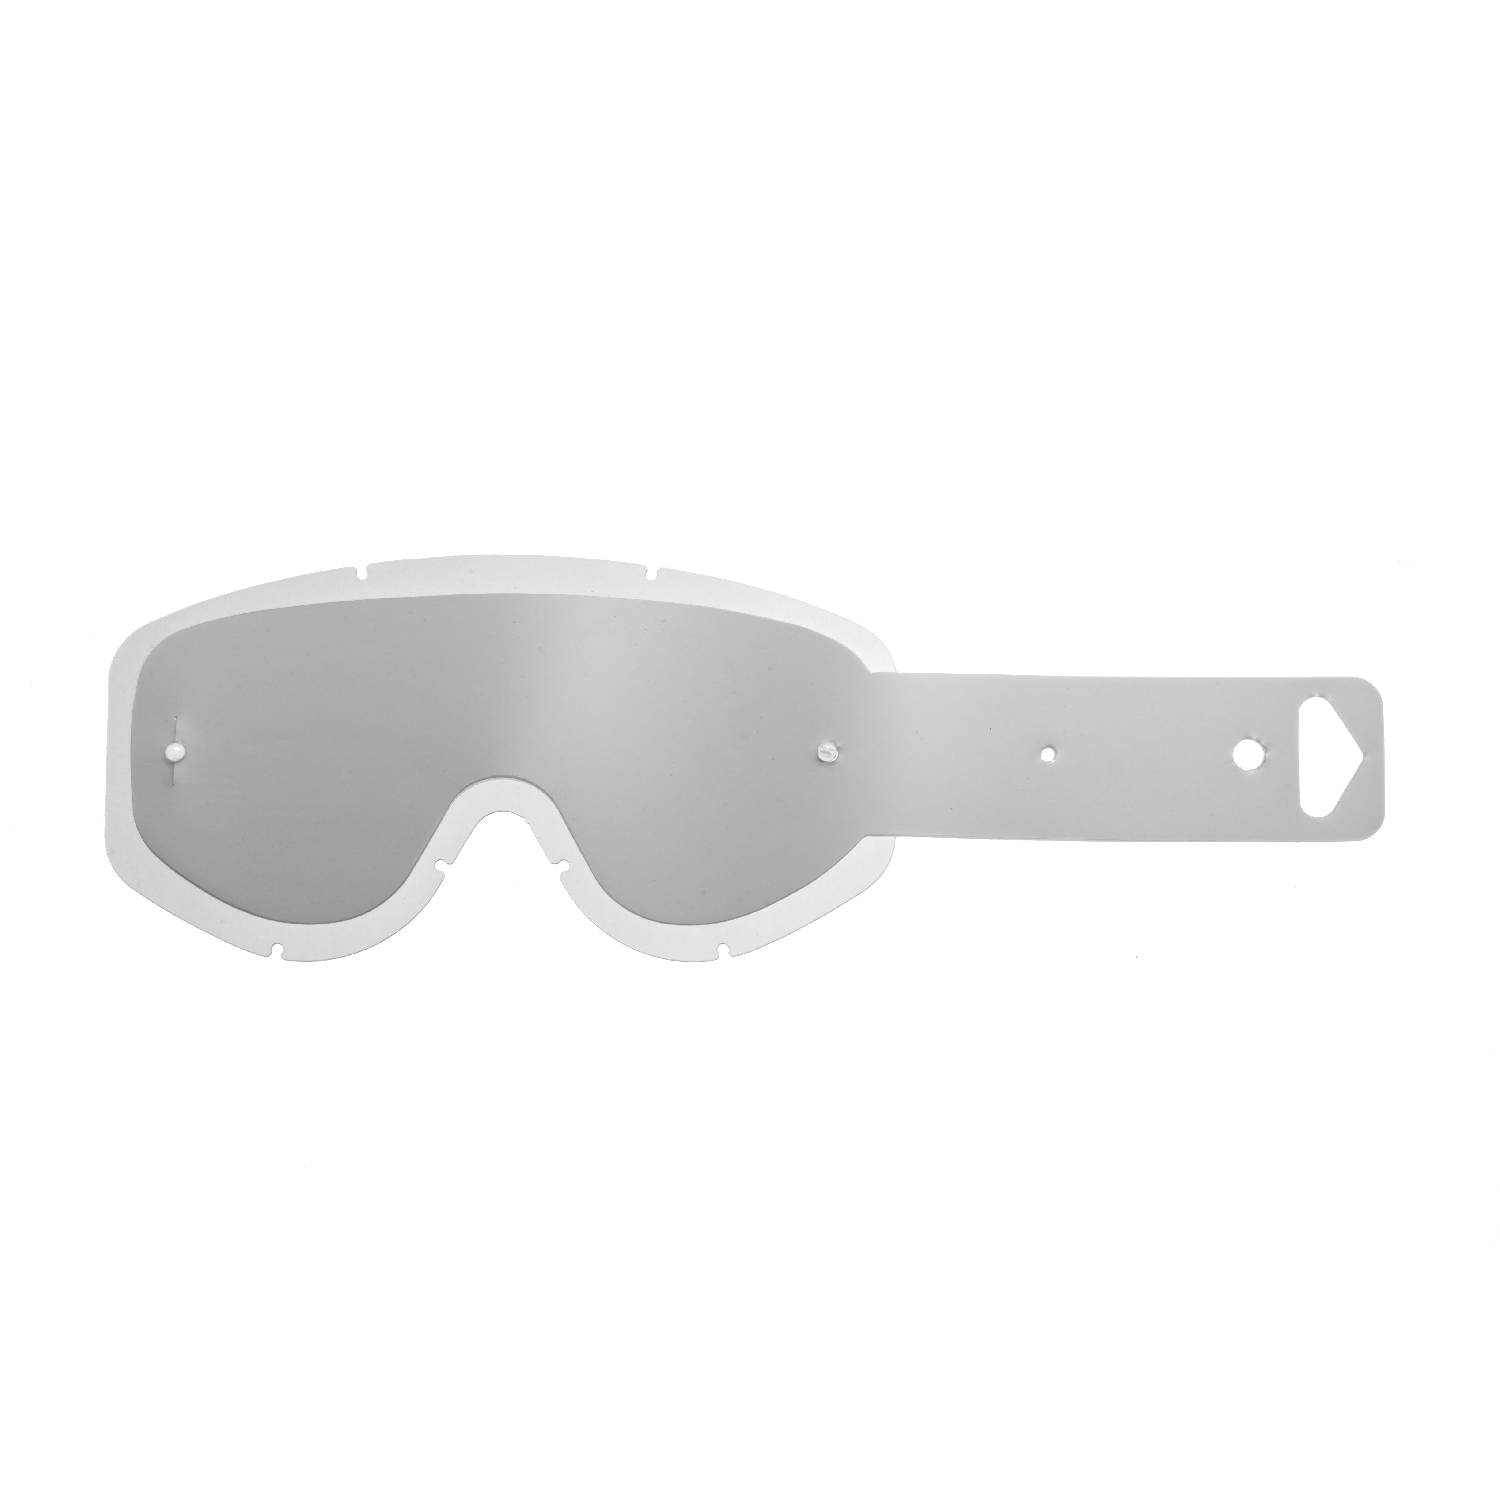 Lente trasparente + 10 Strappi (combo) compatibile per occhiale/maschera Scott 83/89